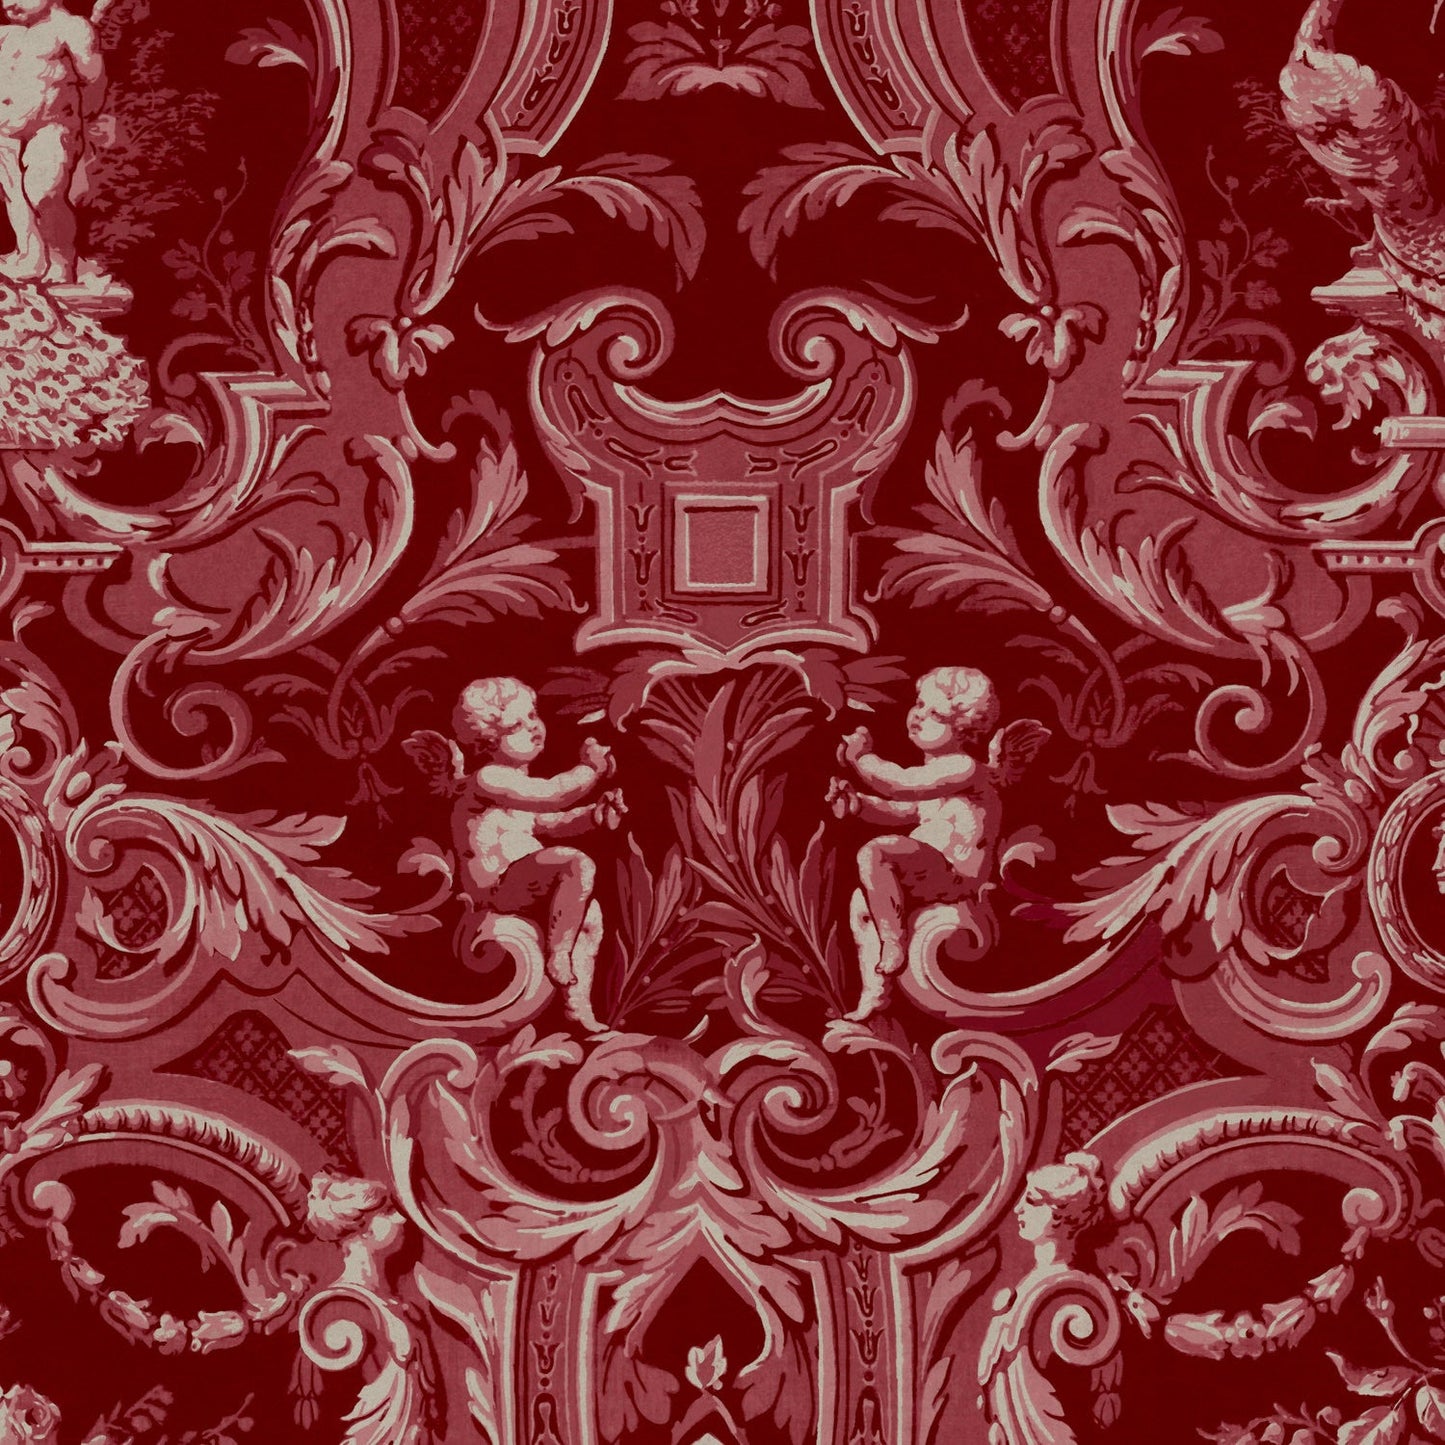 BAROQUE Red Velvet Fabric - Warner House